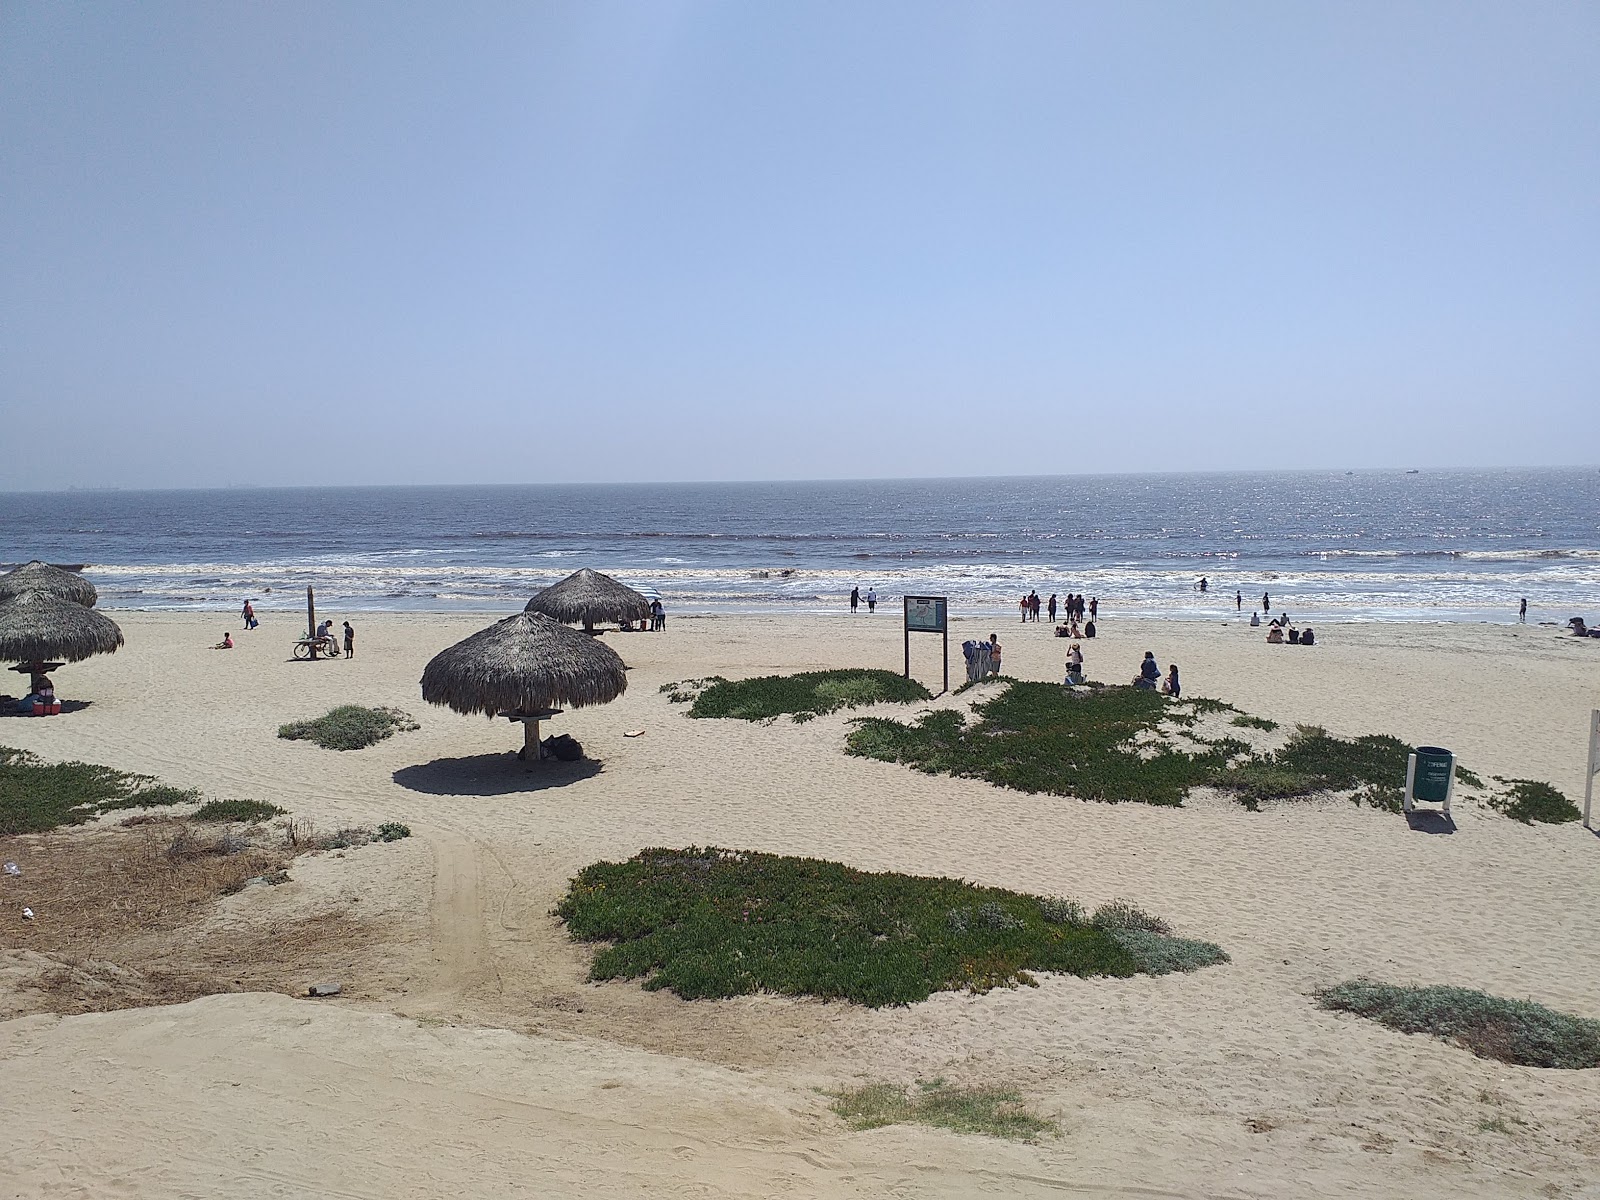 Fotografie cu Playa Hermosa cu o suprafață de nisip strălucitor